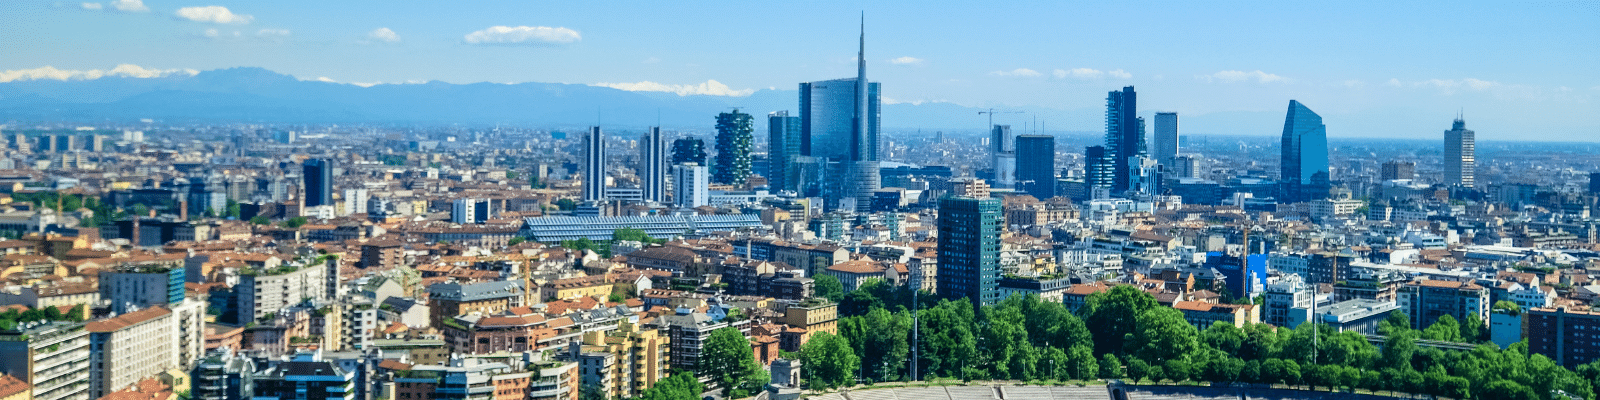 Urlaub in Mailand